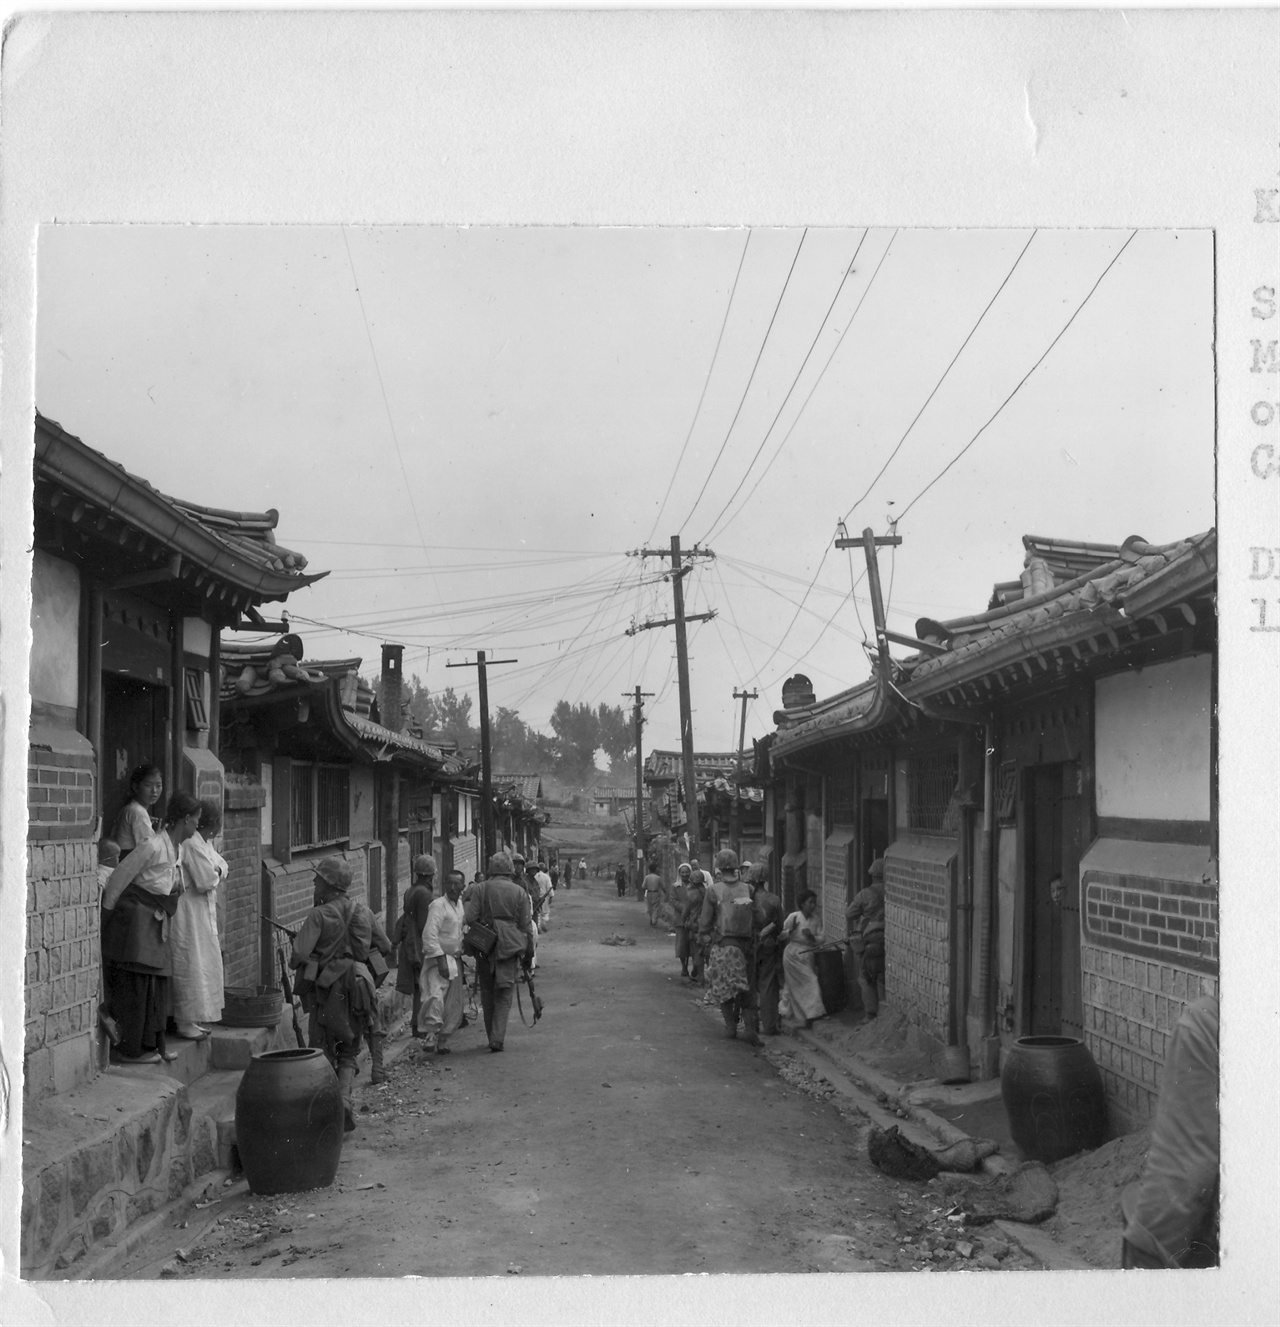  1950. 9. 서울, 유엔군들이 종로 한옥마을에서 인민군 잔당을 쫓고 있다. 